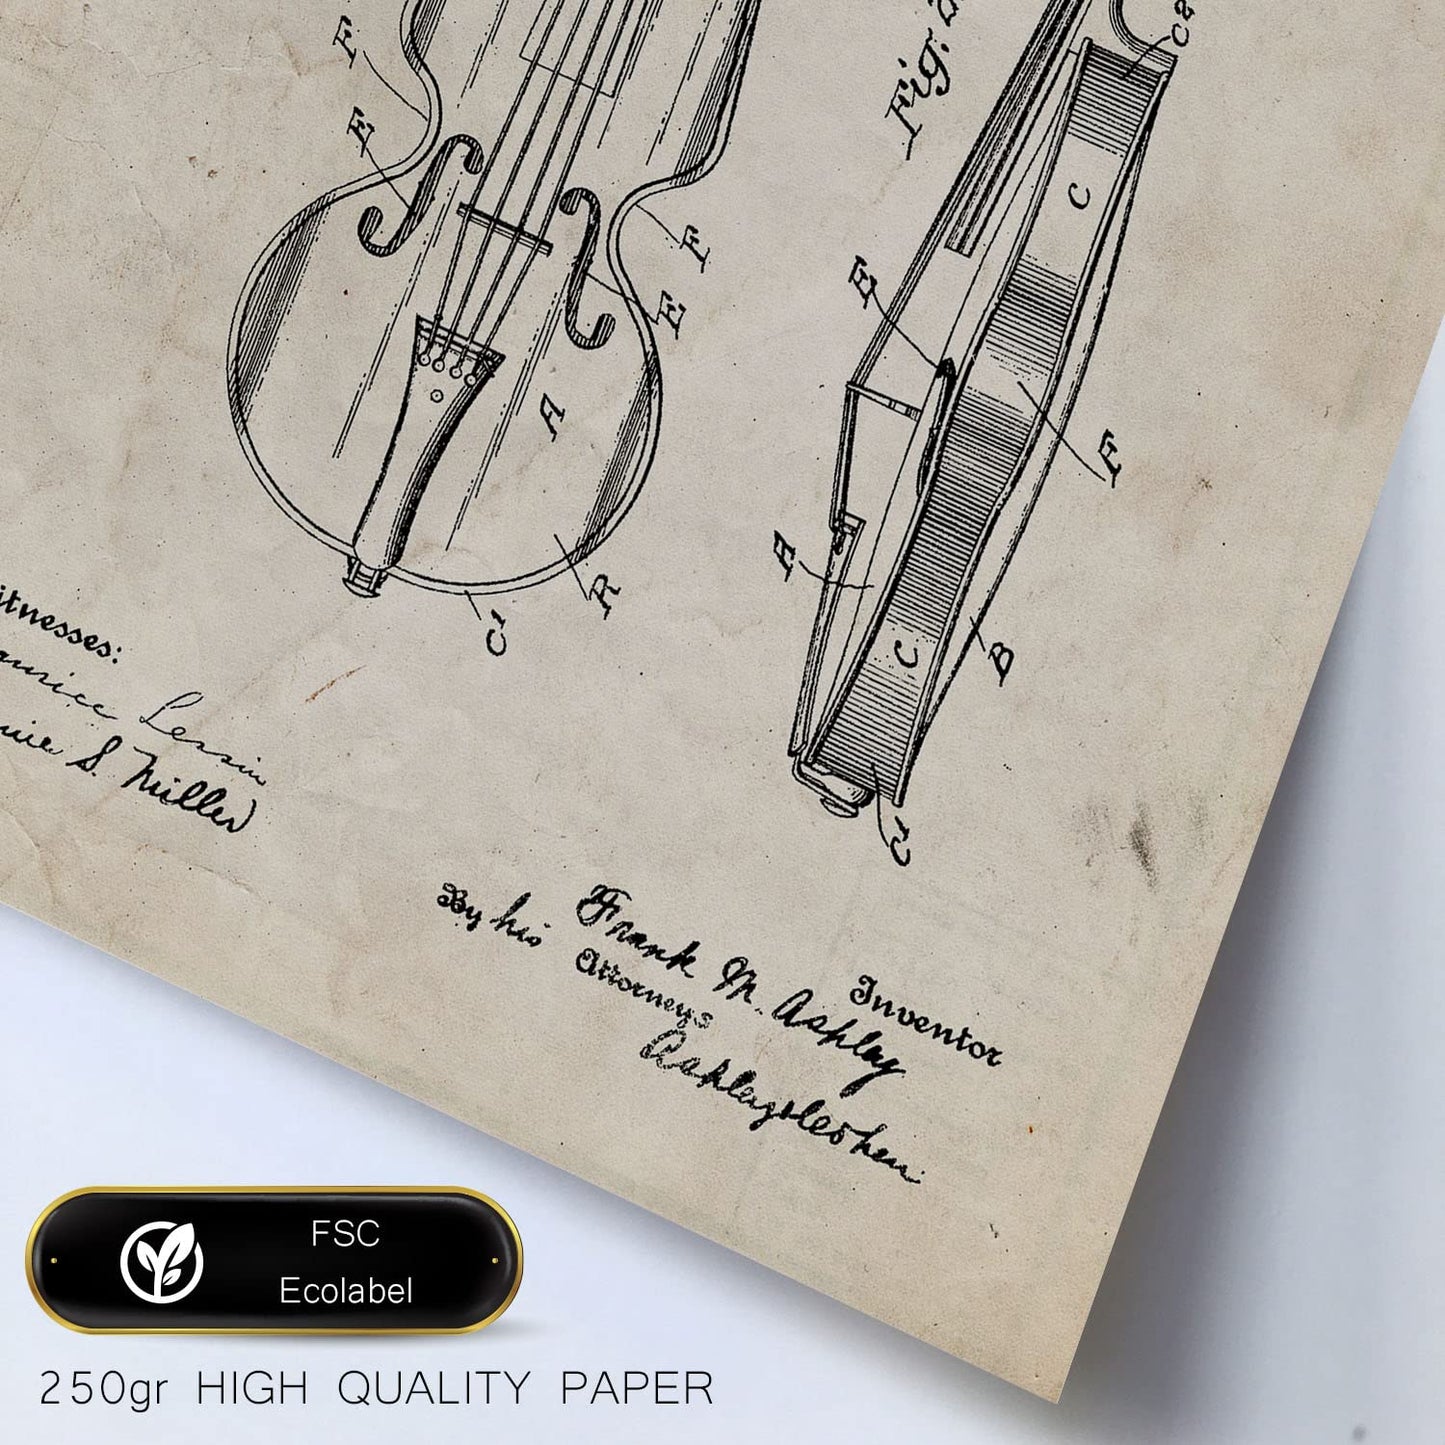 Set de 6 láminas de patentes Instrumentos de cuerda. Pósters con dibujos retro de inventos antiguos. Tamaños A4 y A3. .-Artwork-Nacnic-Nacnic Estudio SL